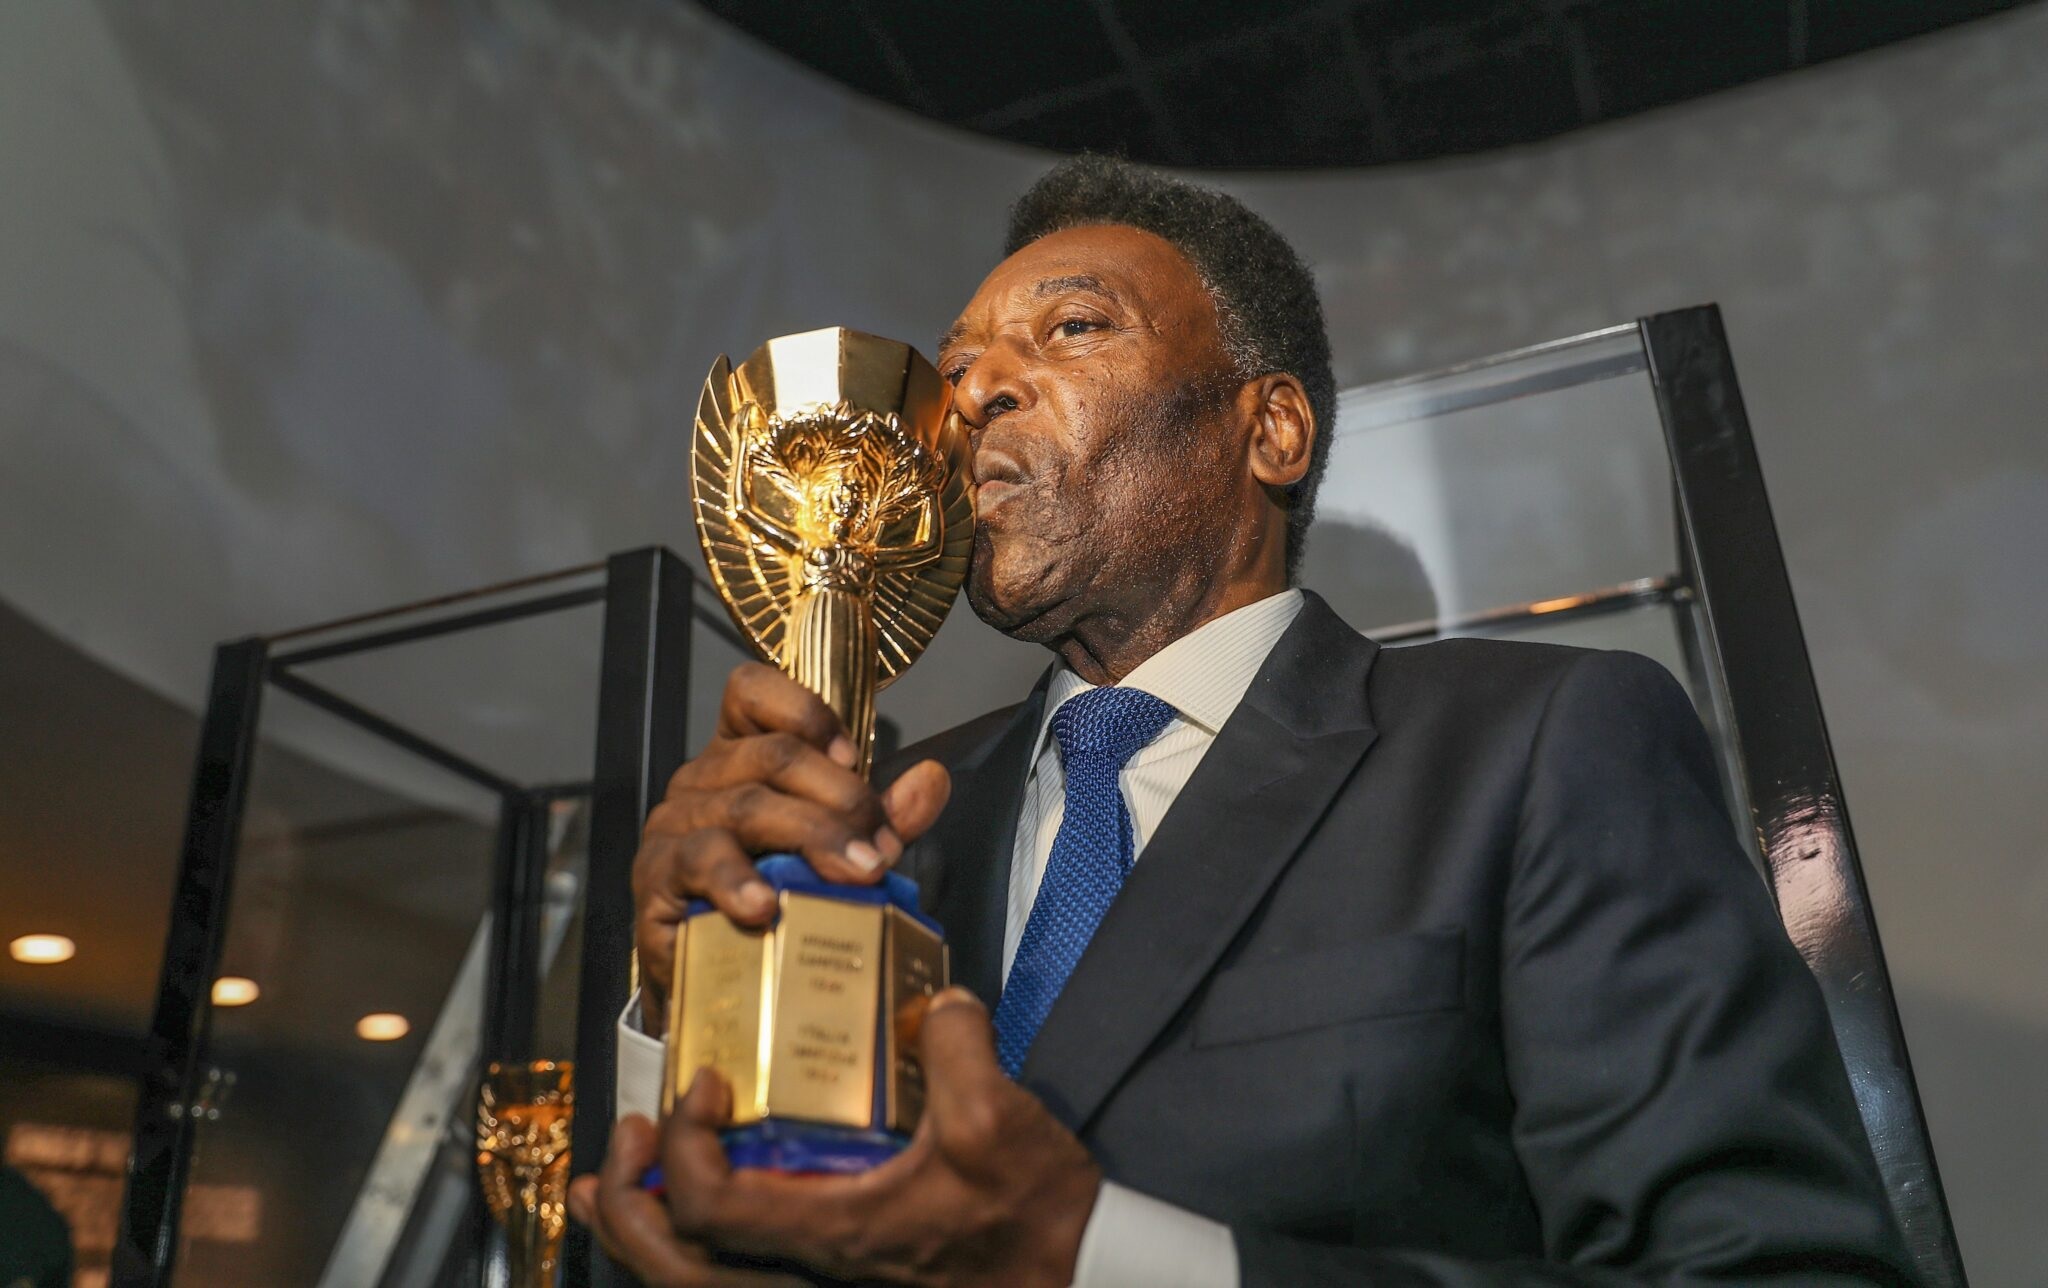 Golaço, hat-trick e cartaz famoso: as histórias dos gols de Pelé na Seleção que a Fifa ignora